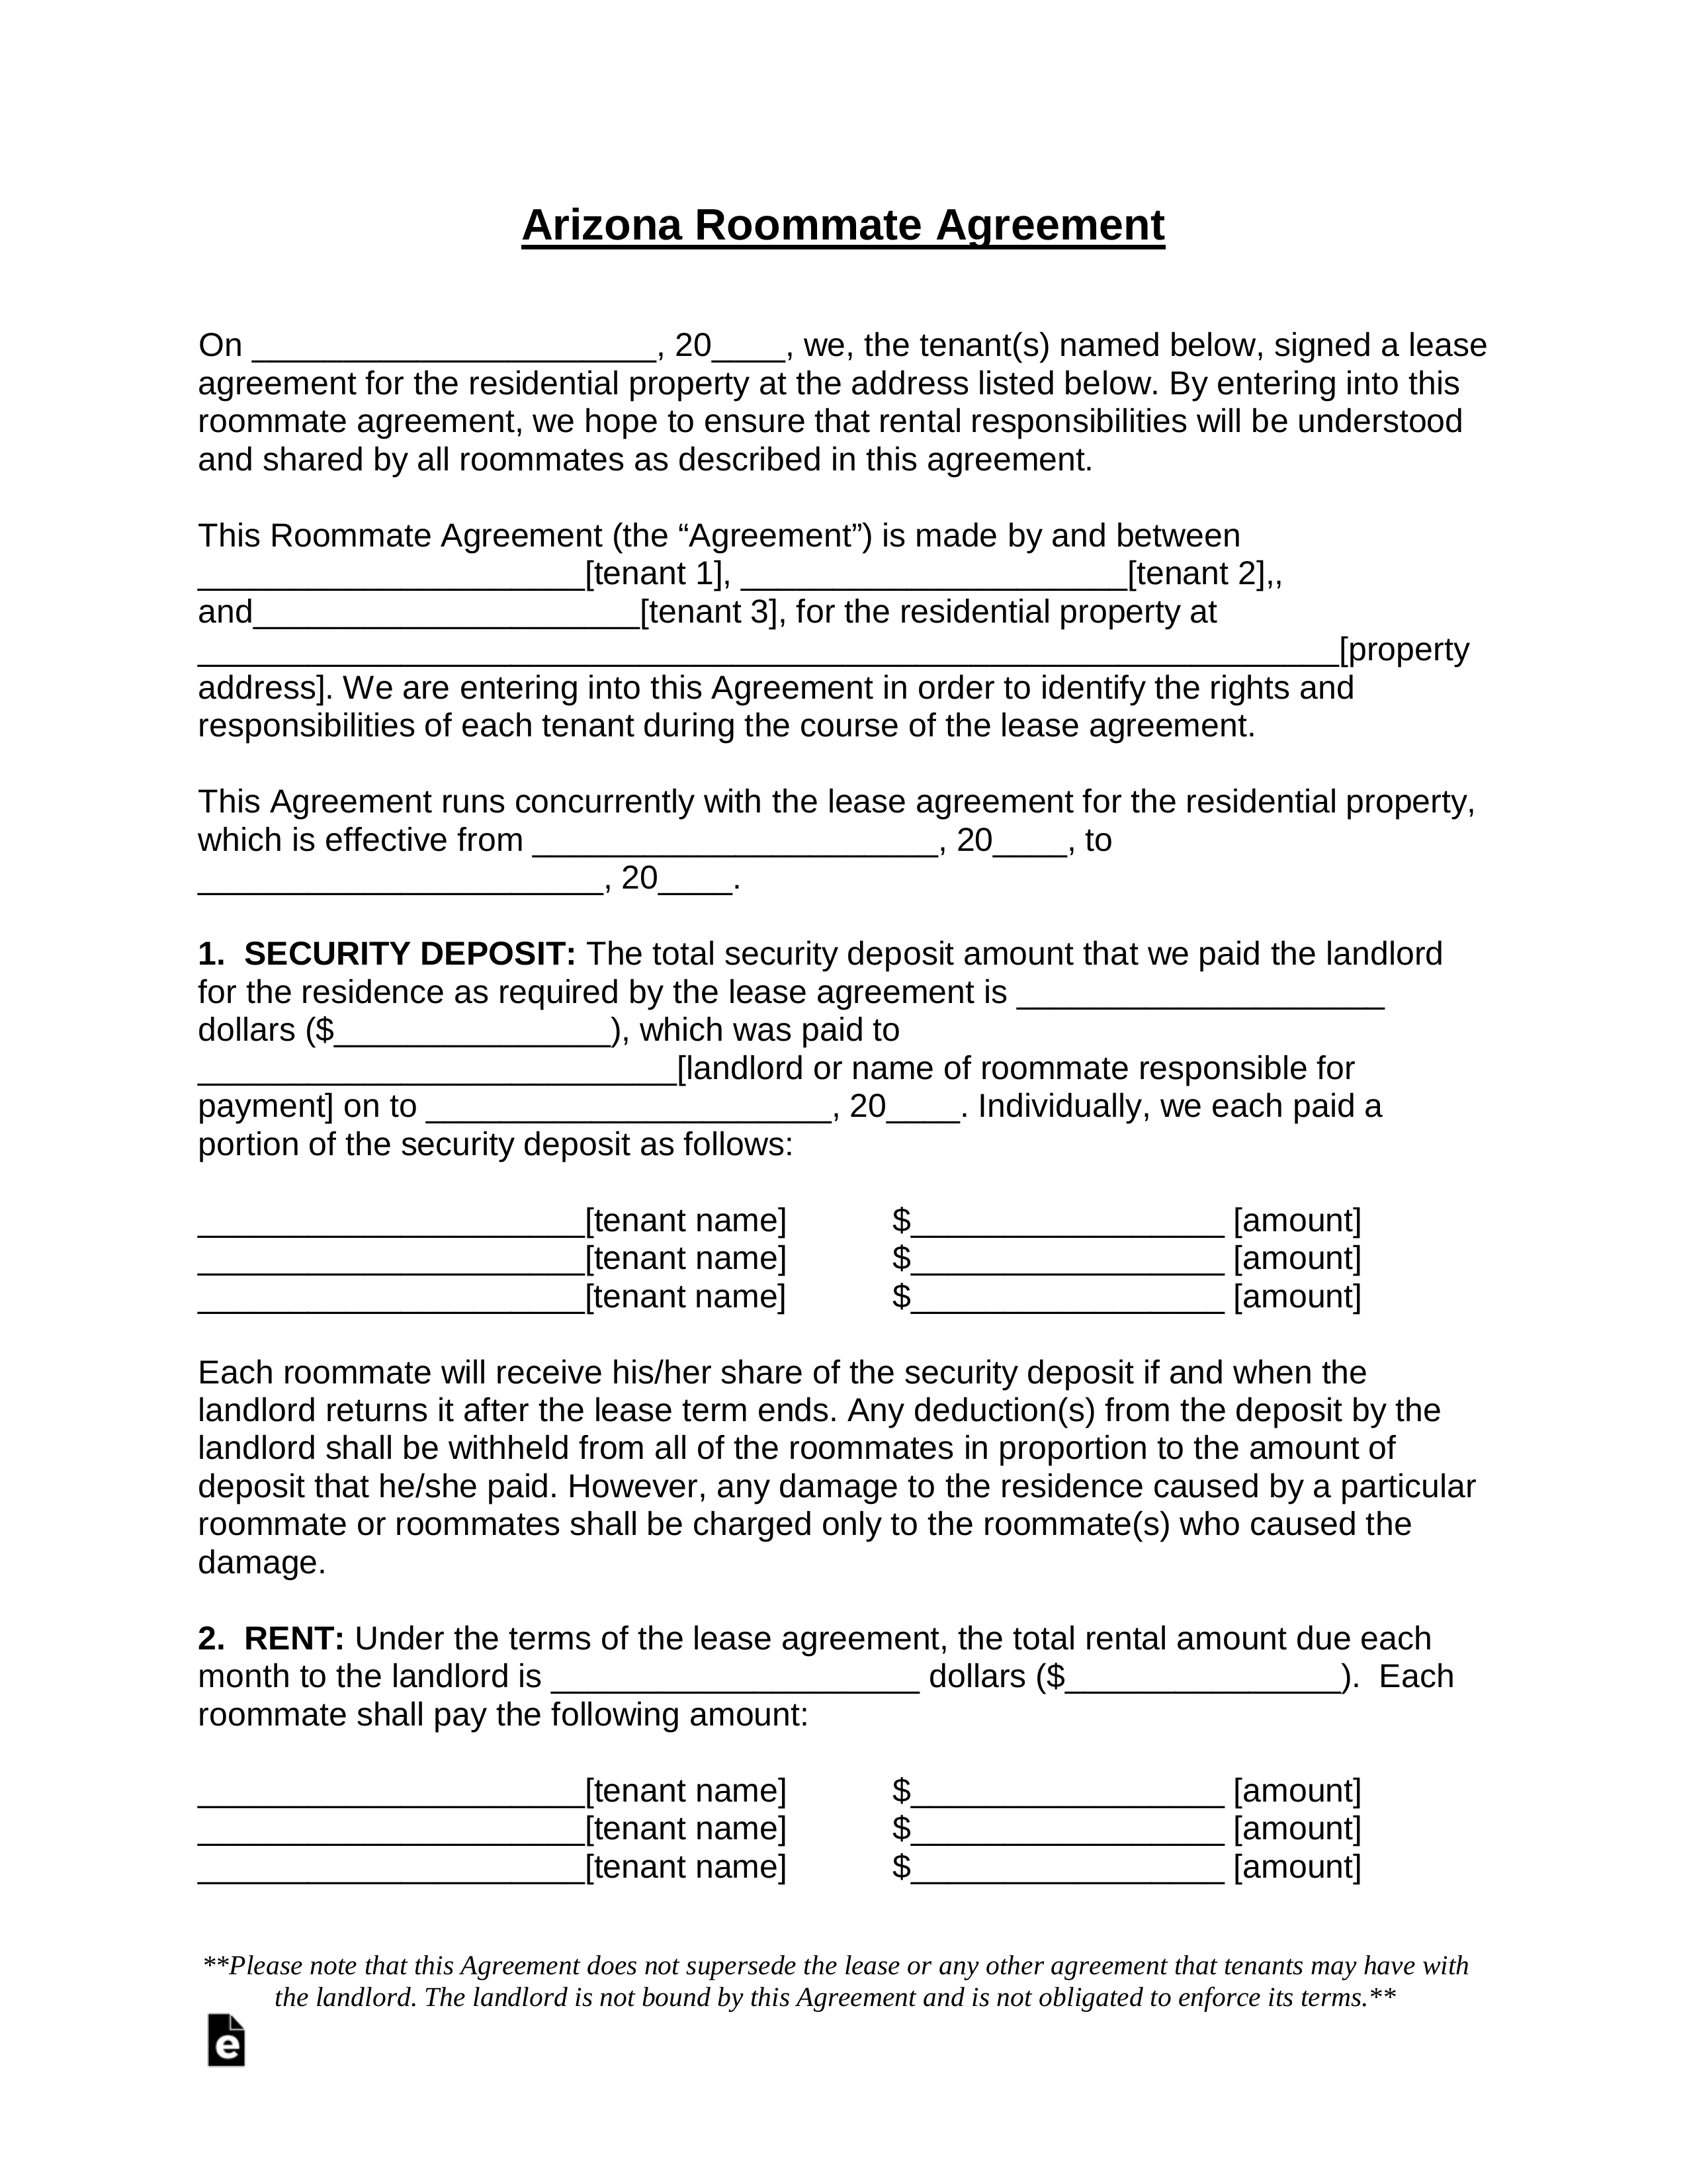 Free Arizona Room Rental (Roommate) Agreement Template - PDF  In Security Deposit Agreement Between Roommates With Regard To Security Deposit Agreement Between Roommates